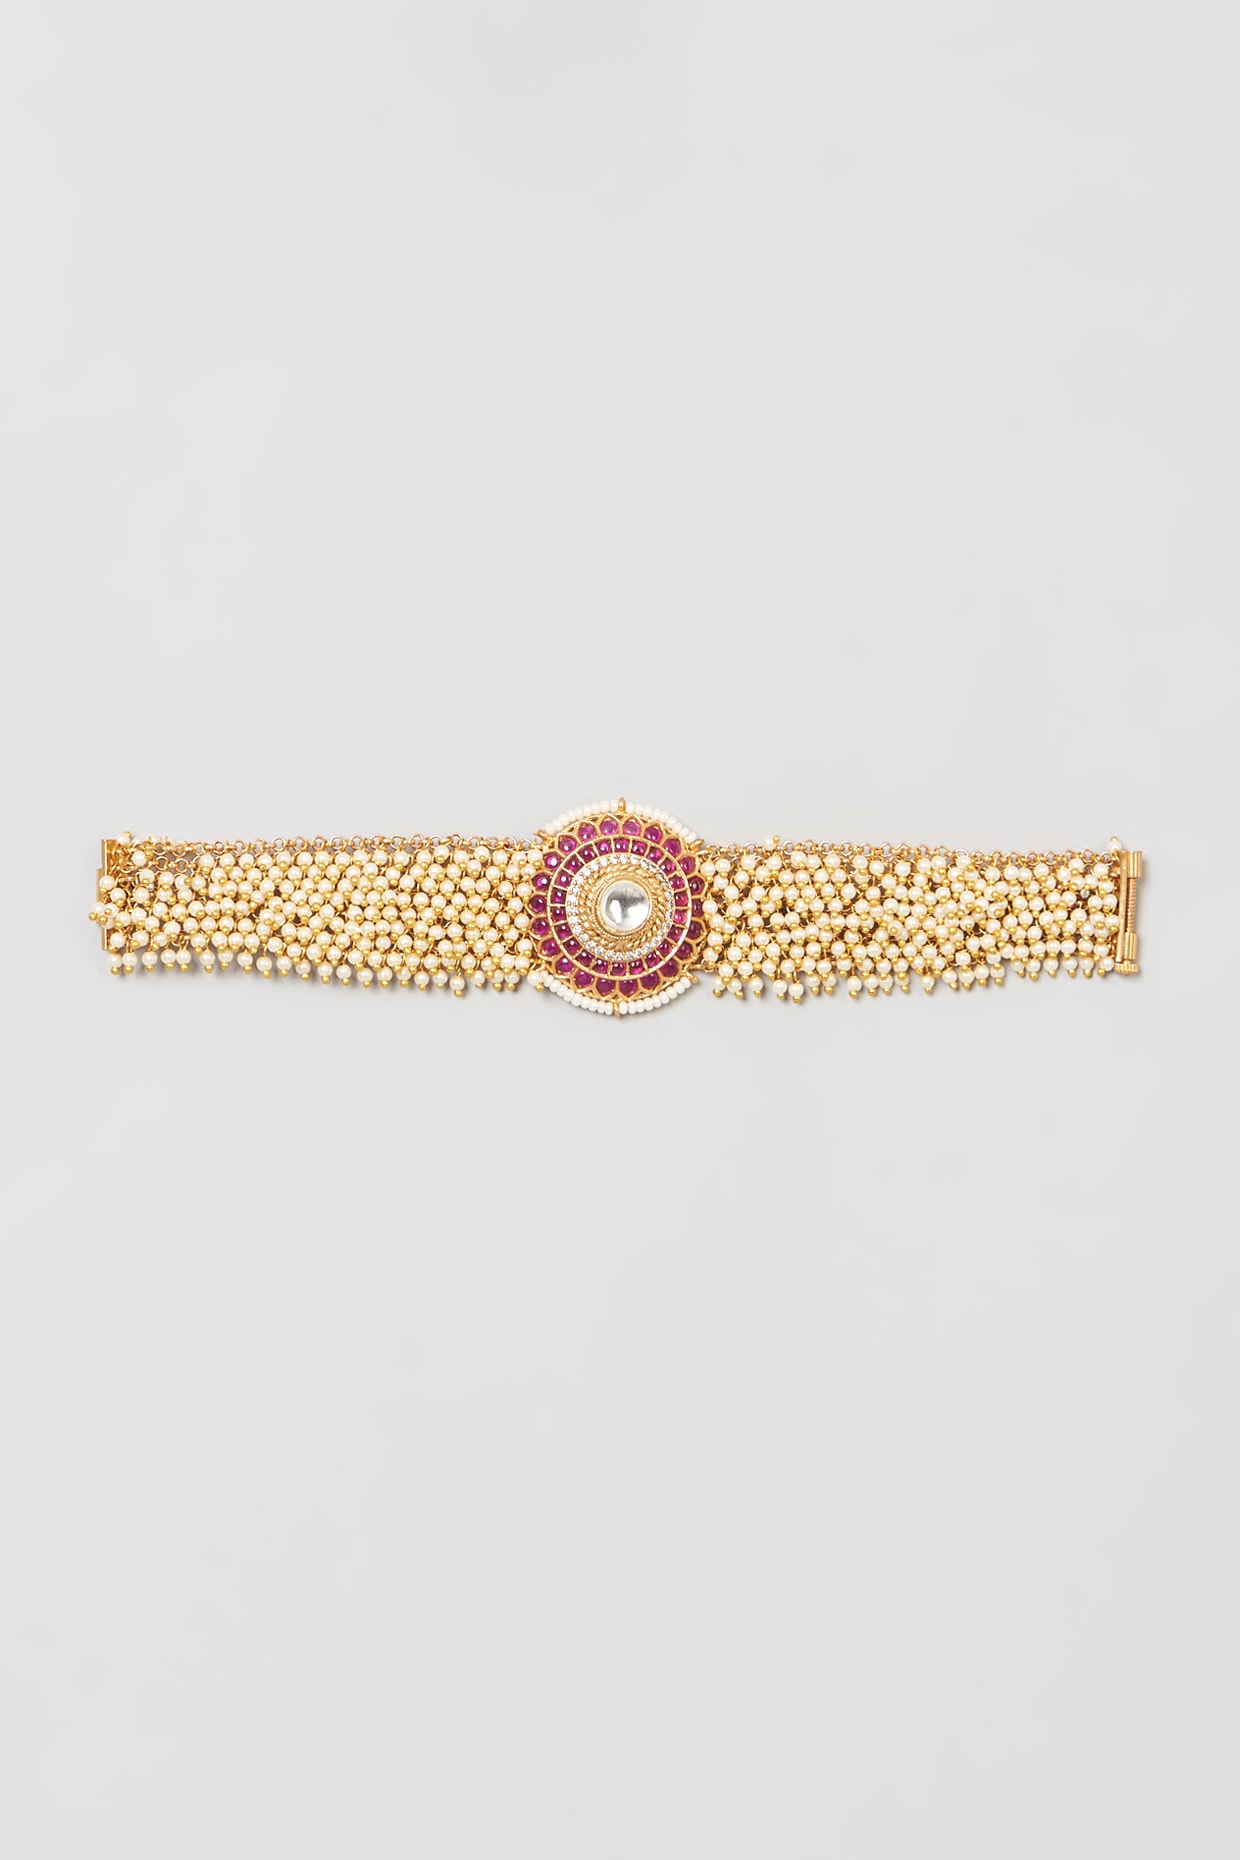 Buy Unique White Stone Rose Gold Bracelet for Girls